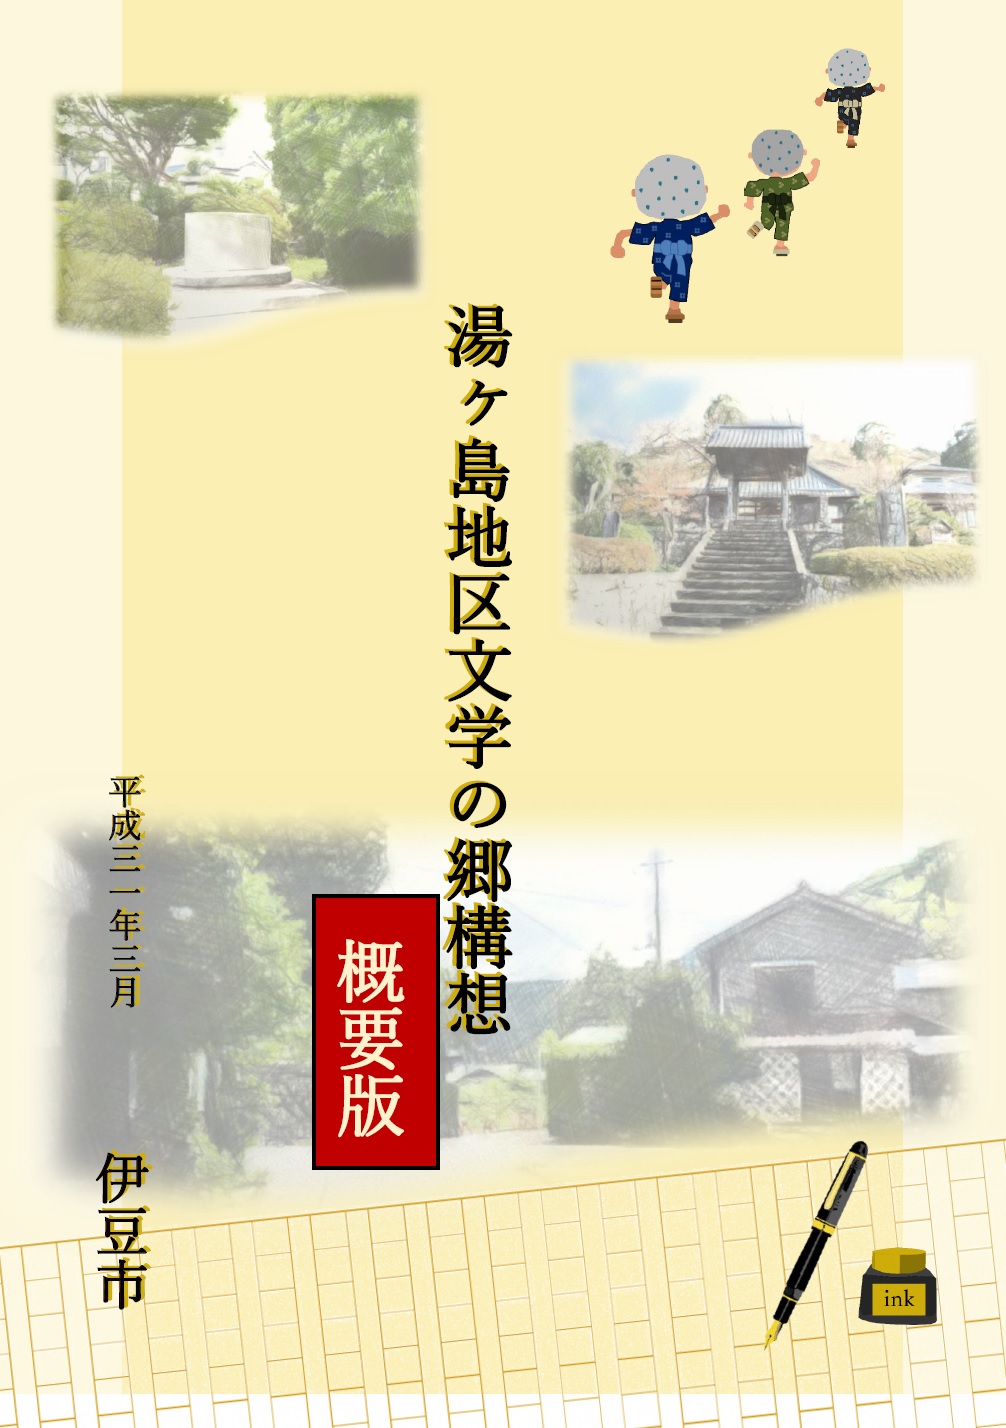 「湯ヶ島地区文学の郷構想」概要版の表紙